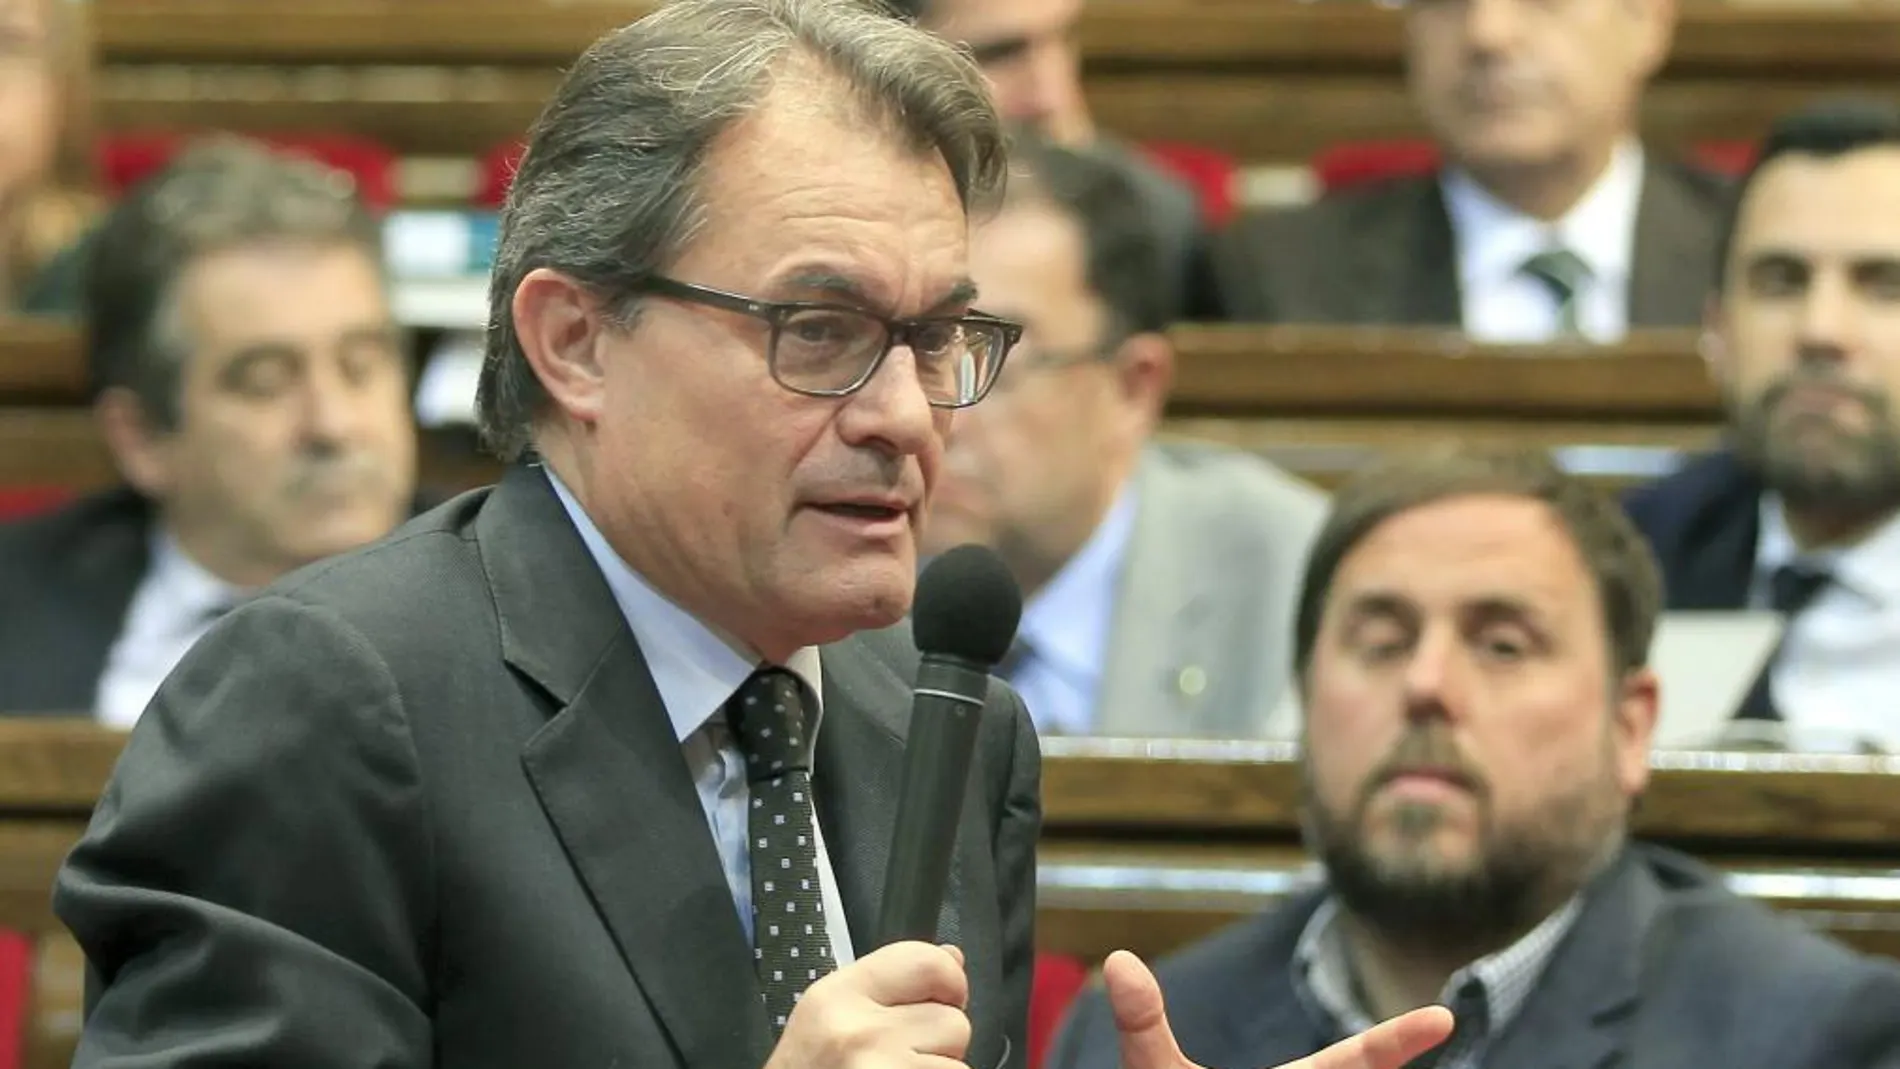 El presidente de la Generalitat, Artur Mas, responde a una pregunta ante la mirada del líder de ERC, Oriol Junqueras